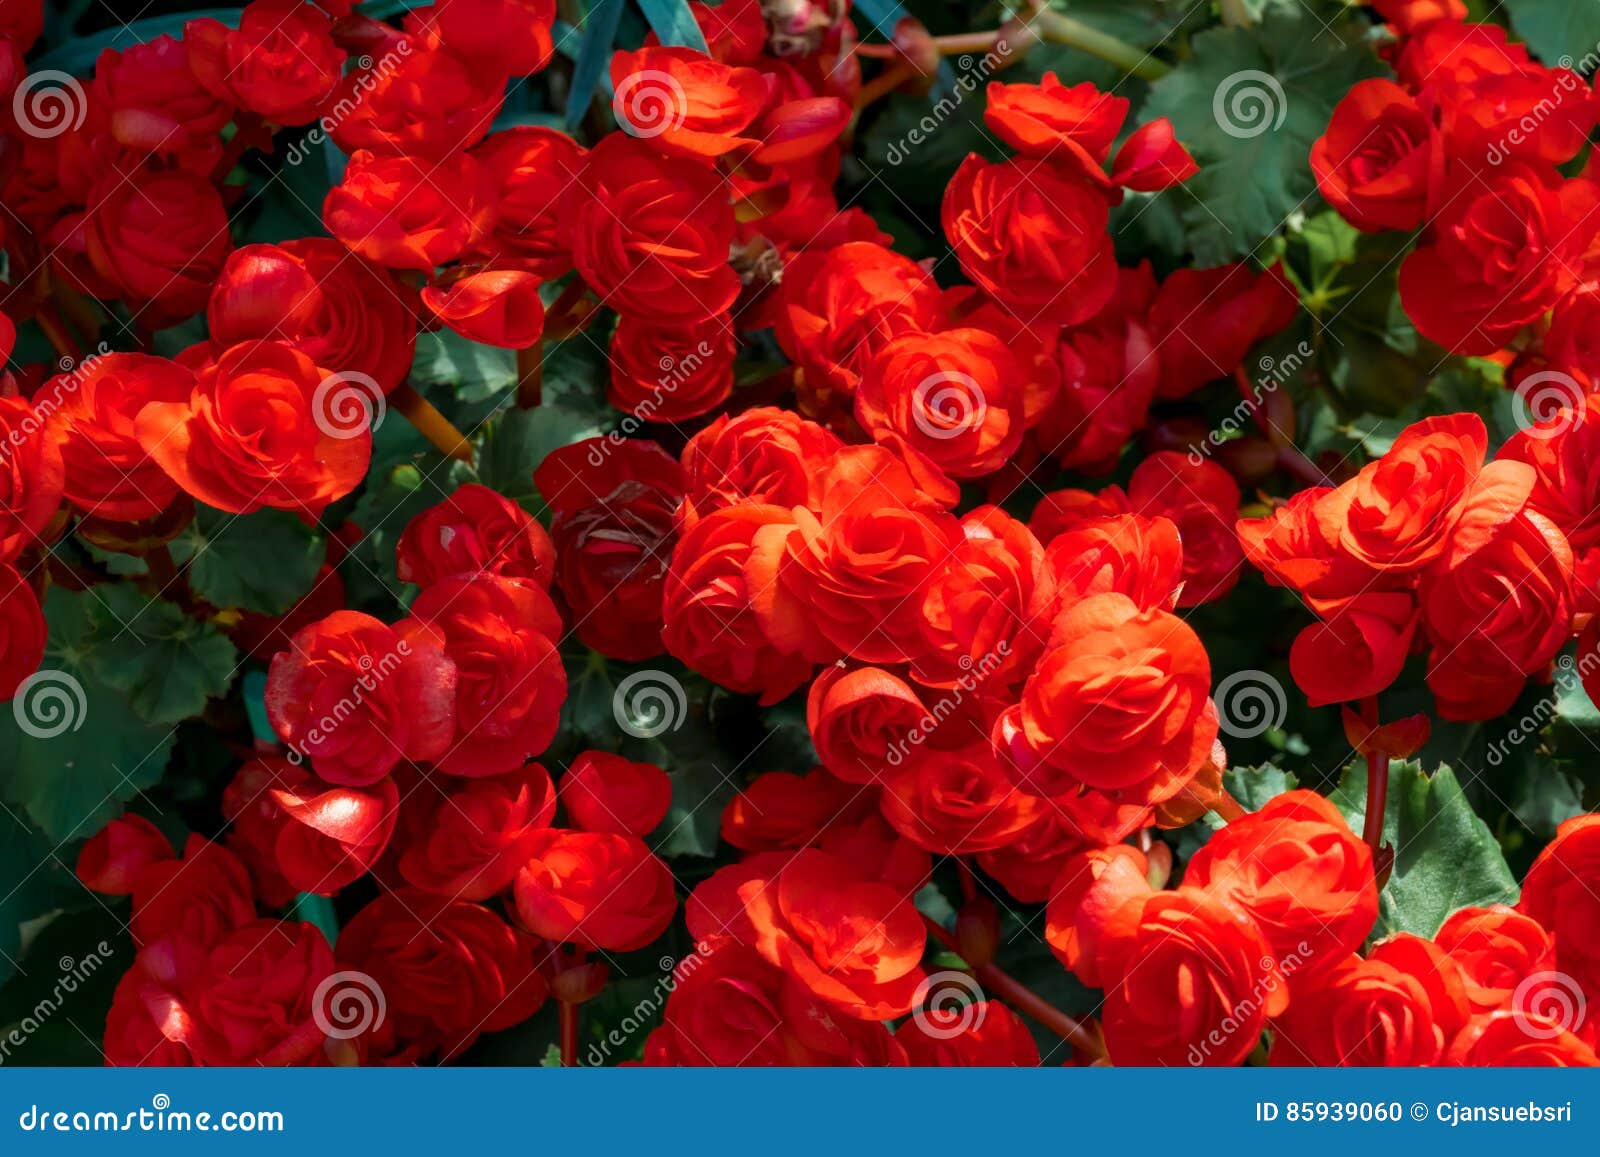 beautiful red begonia